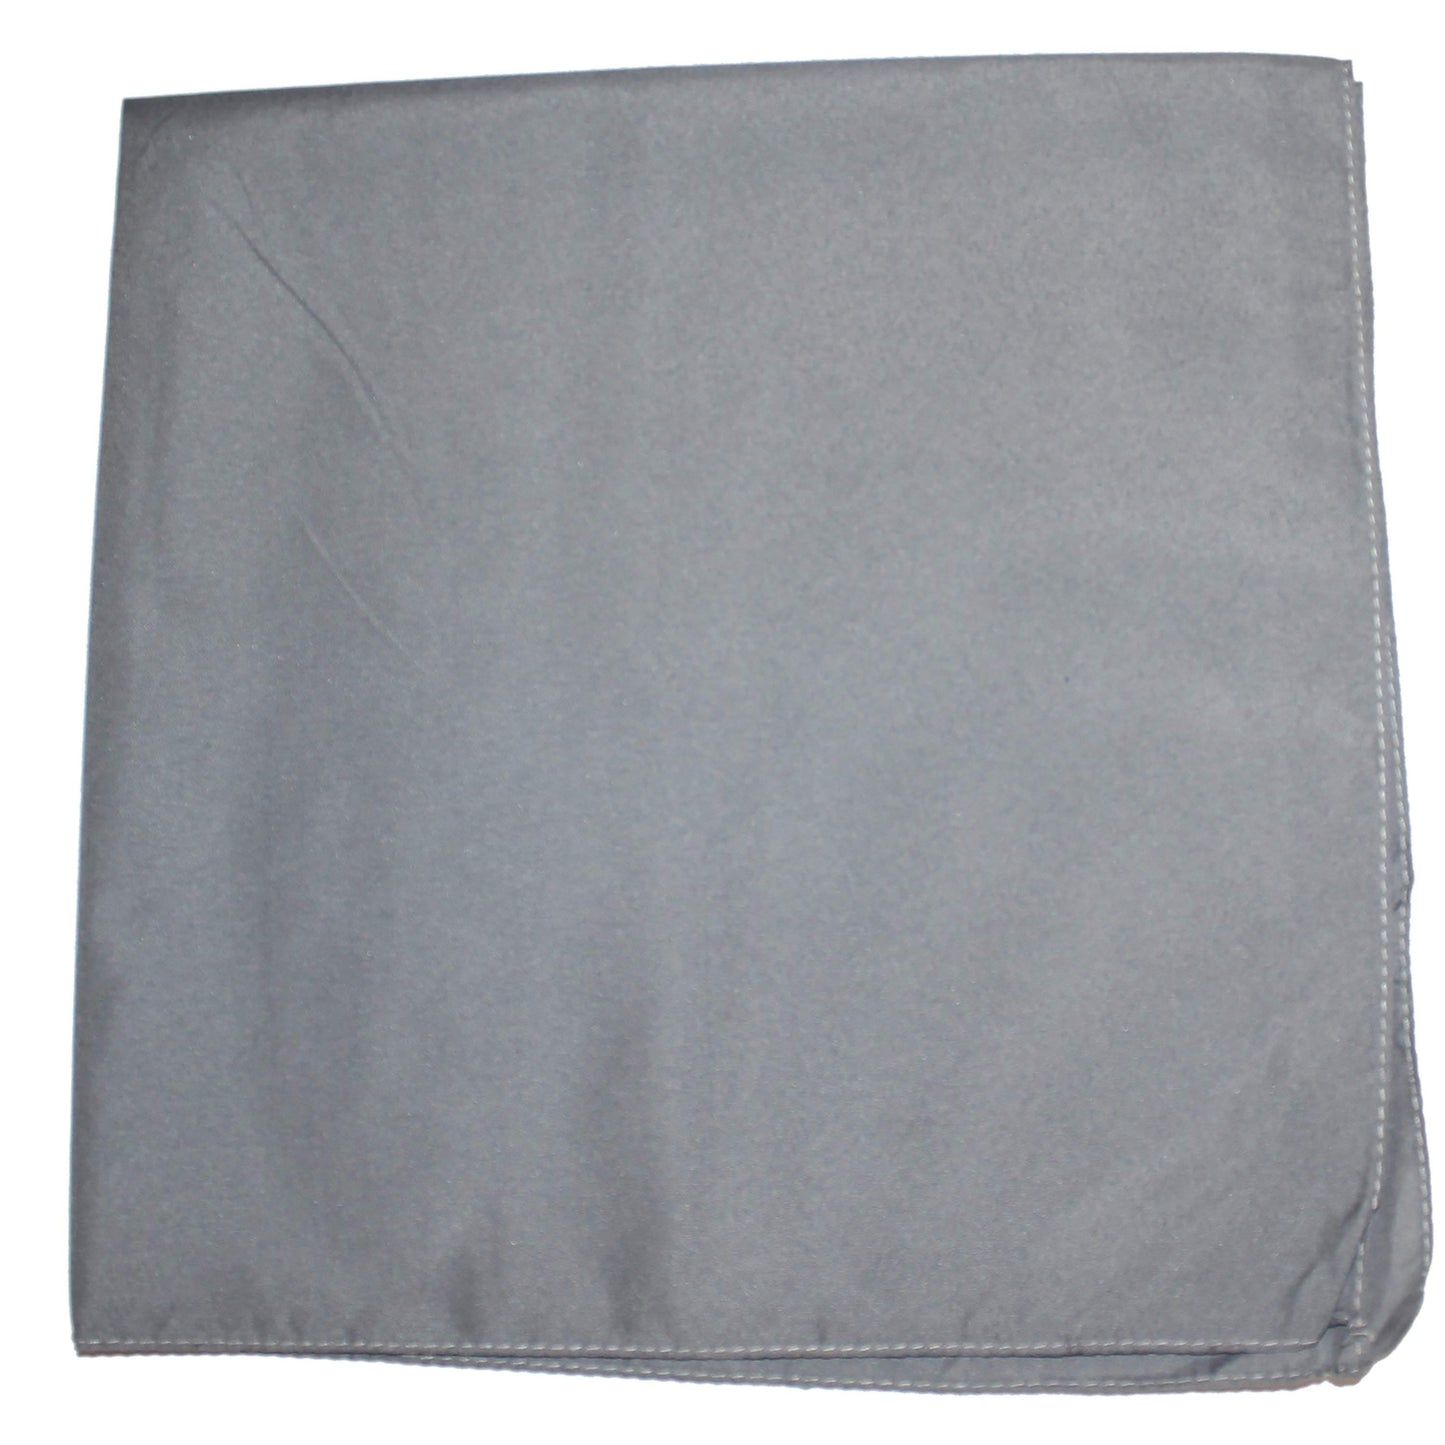 Set of 72 Mechaly Unisex Solid Polyester Plain Bandanas - Bulk Wholesale